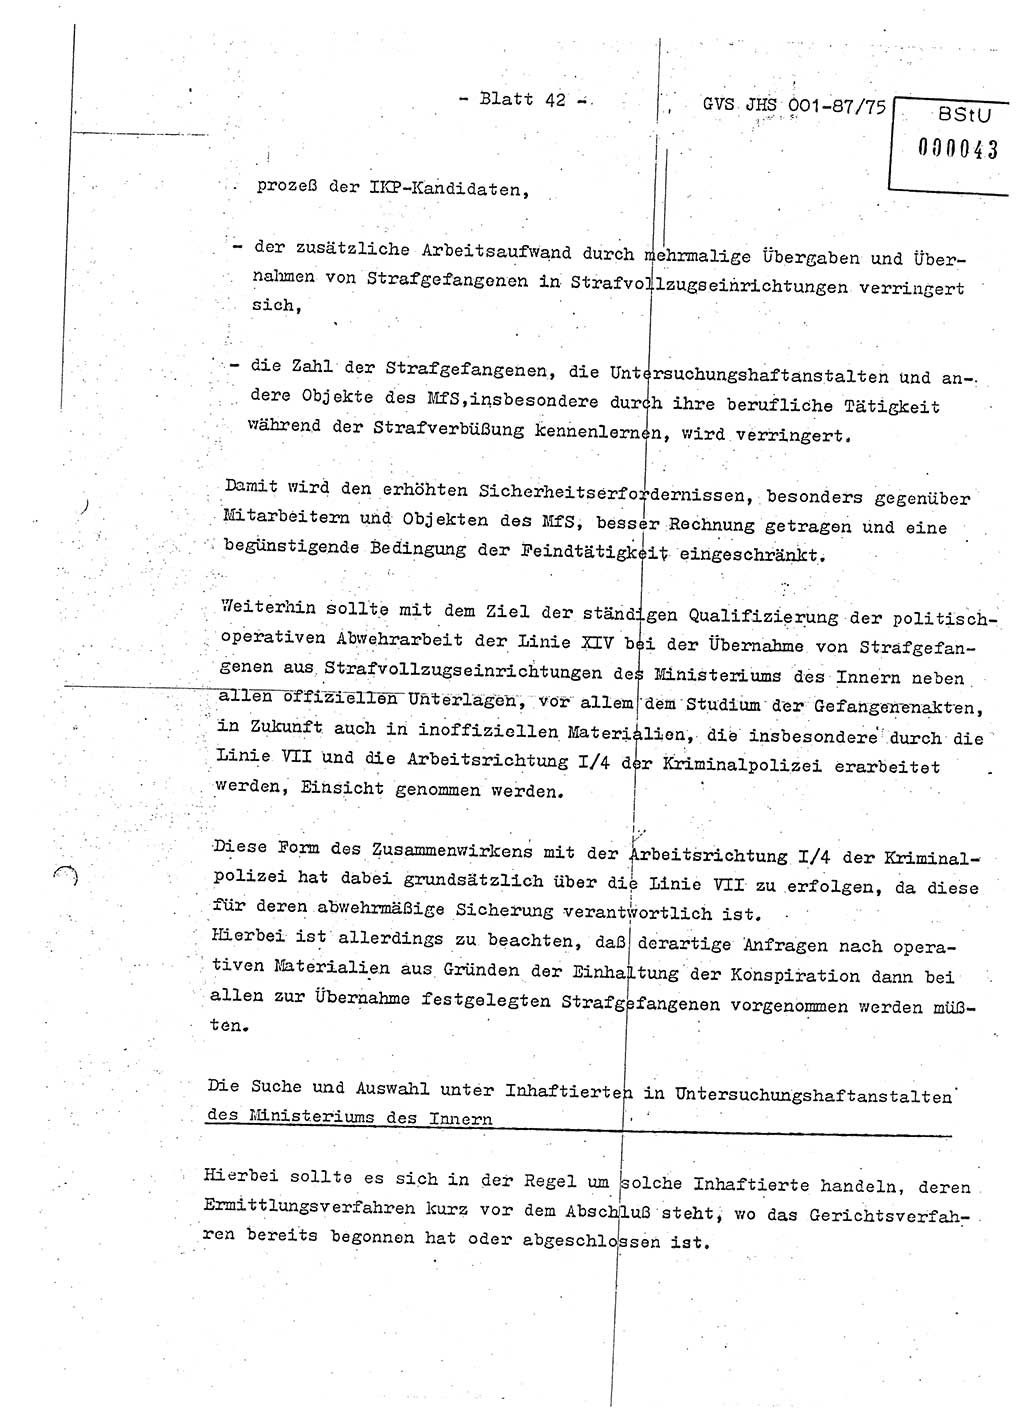 Diplomarbeit Hauptmann Volkmar Heinz (Abt. ⅩⅣ), Oberleutnant Lothar Rüdiger (BV Lpz. Abt. Ⅺ), Ministerium für Staatssicherheit (MfS) [Deutsche Demokratische Republik (DDR)], Juristische Hochschule (JHS), Geheime Verschlußsache (GVS) o001-87/75, Potsdam 1975, Seite 42 (Dipl.-Arb. MfS DDR JHS GVS o001-87/75 1975, S. 42)